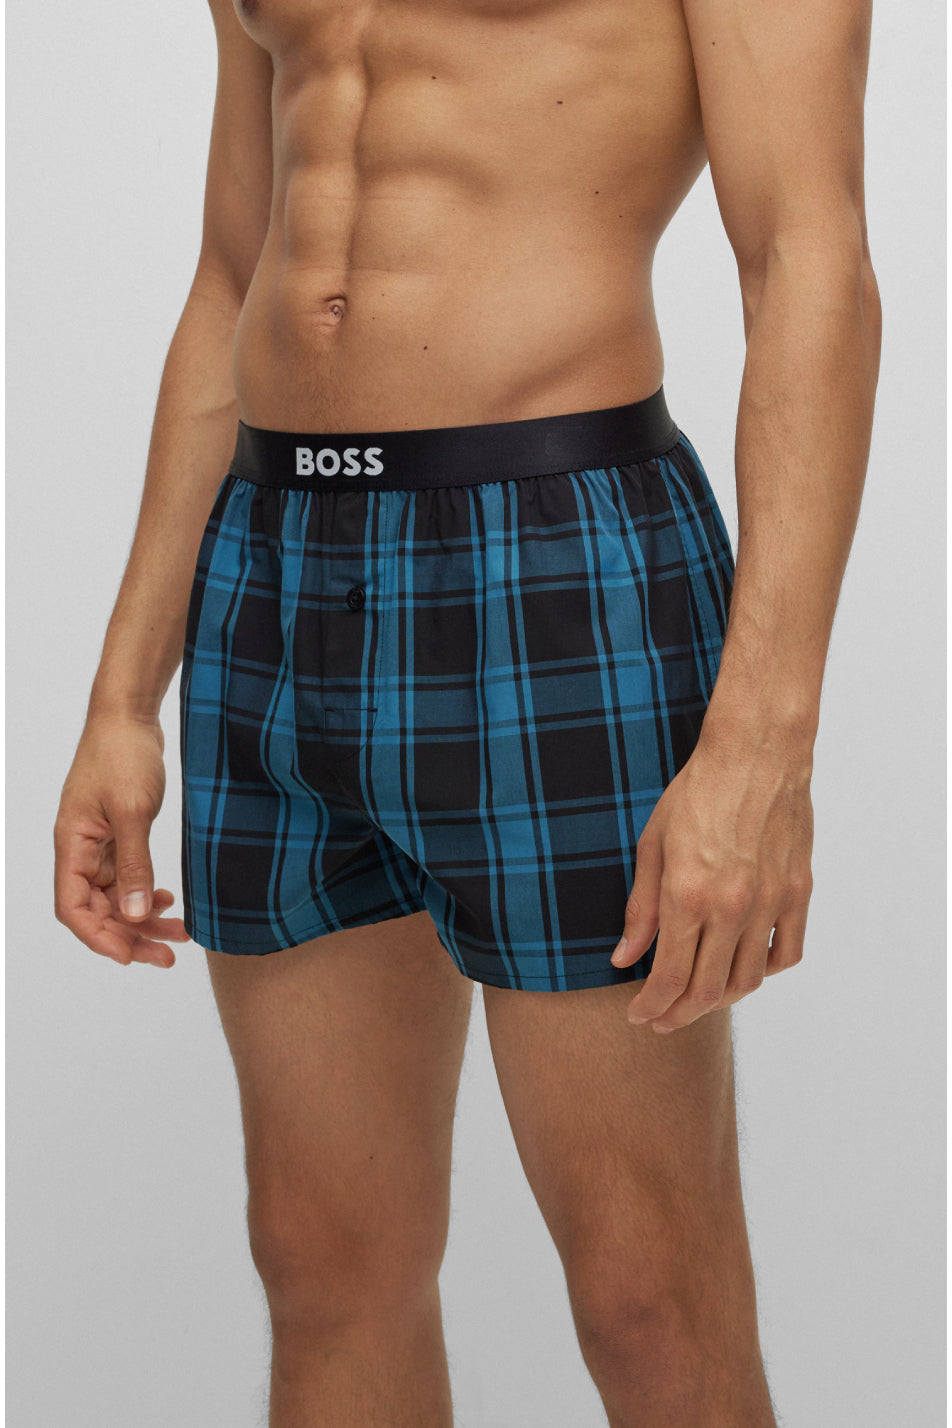 Boss 2 Pack Men's Boxer Shorts